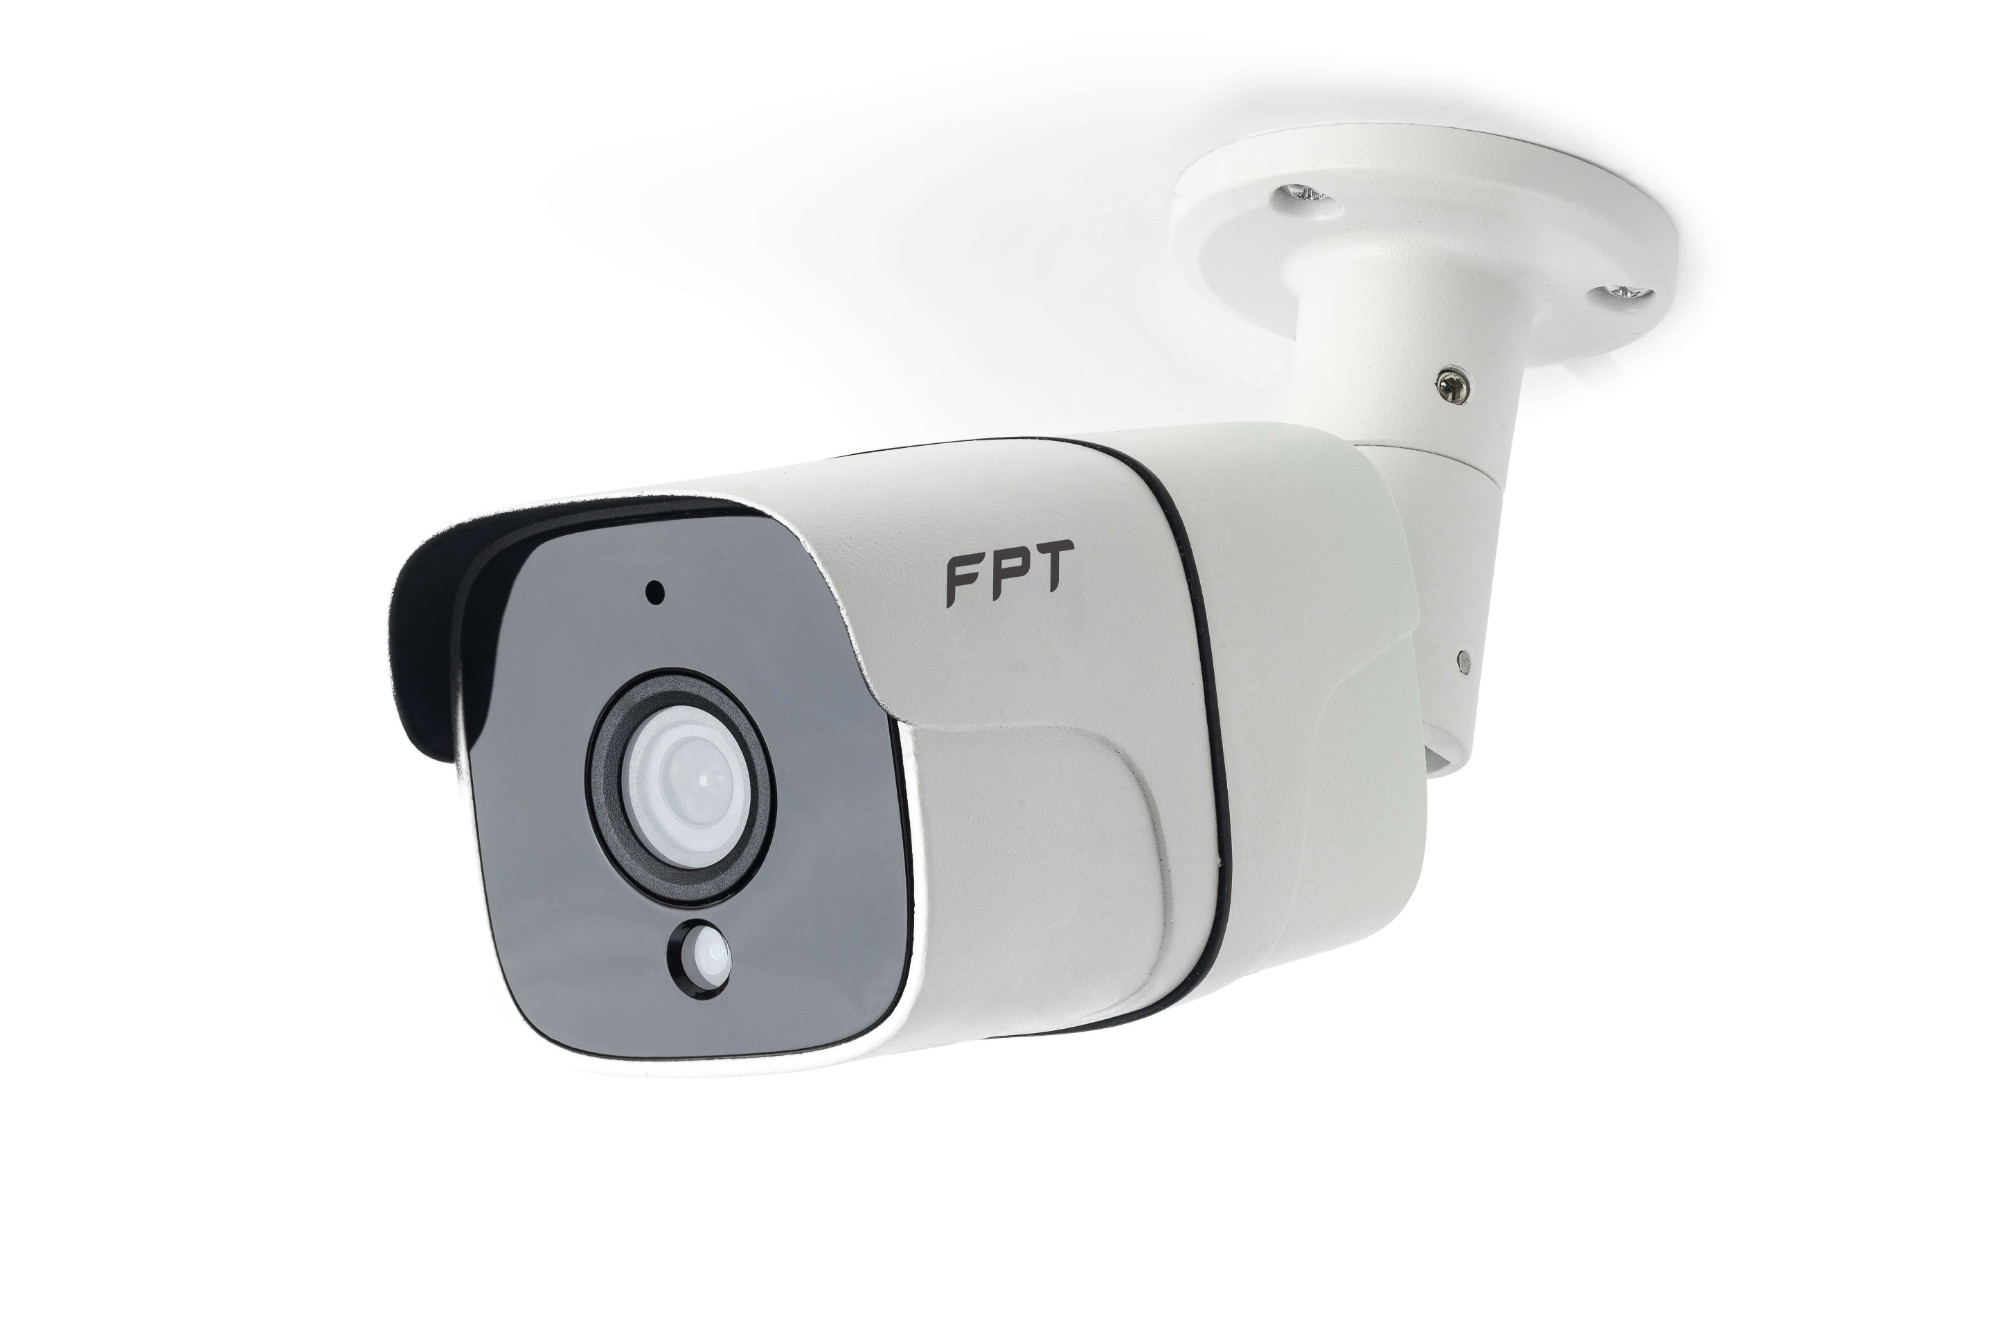 Lắp Camera FPT – Kết Nối Wifi, Lữu Trữ Cloud, Bảo Mật Tuyệt Đối, Giá Rẻ